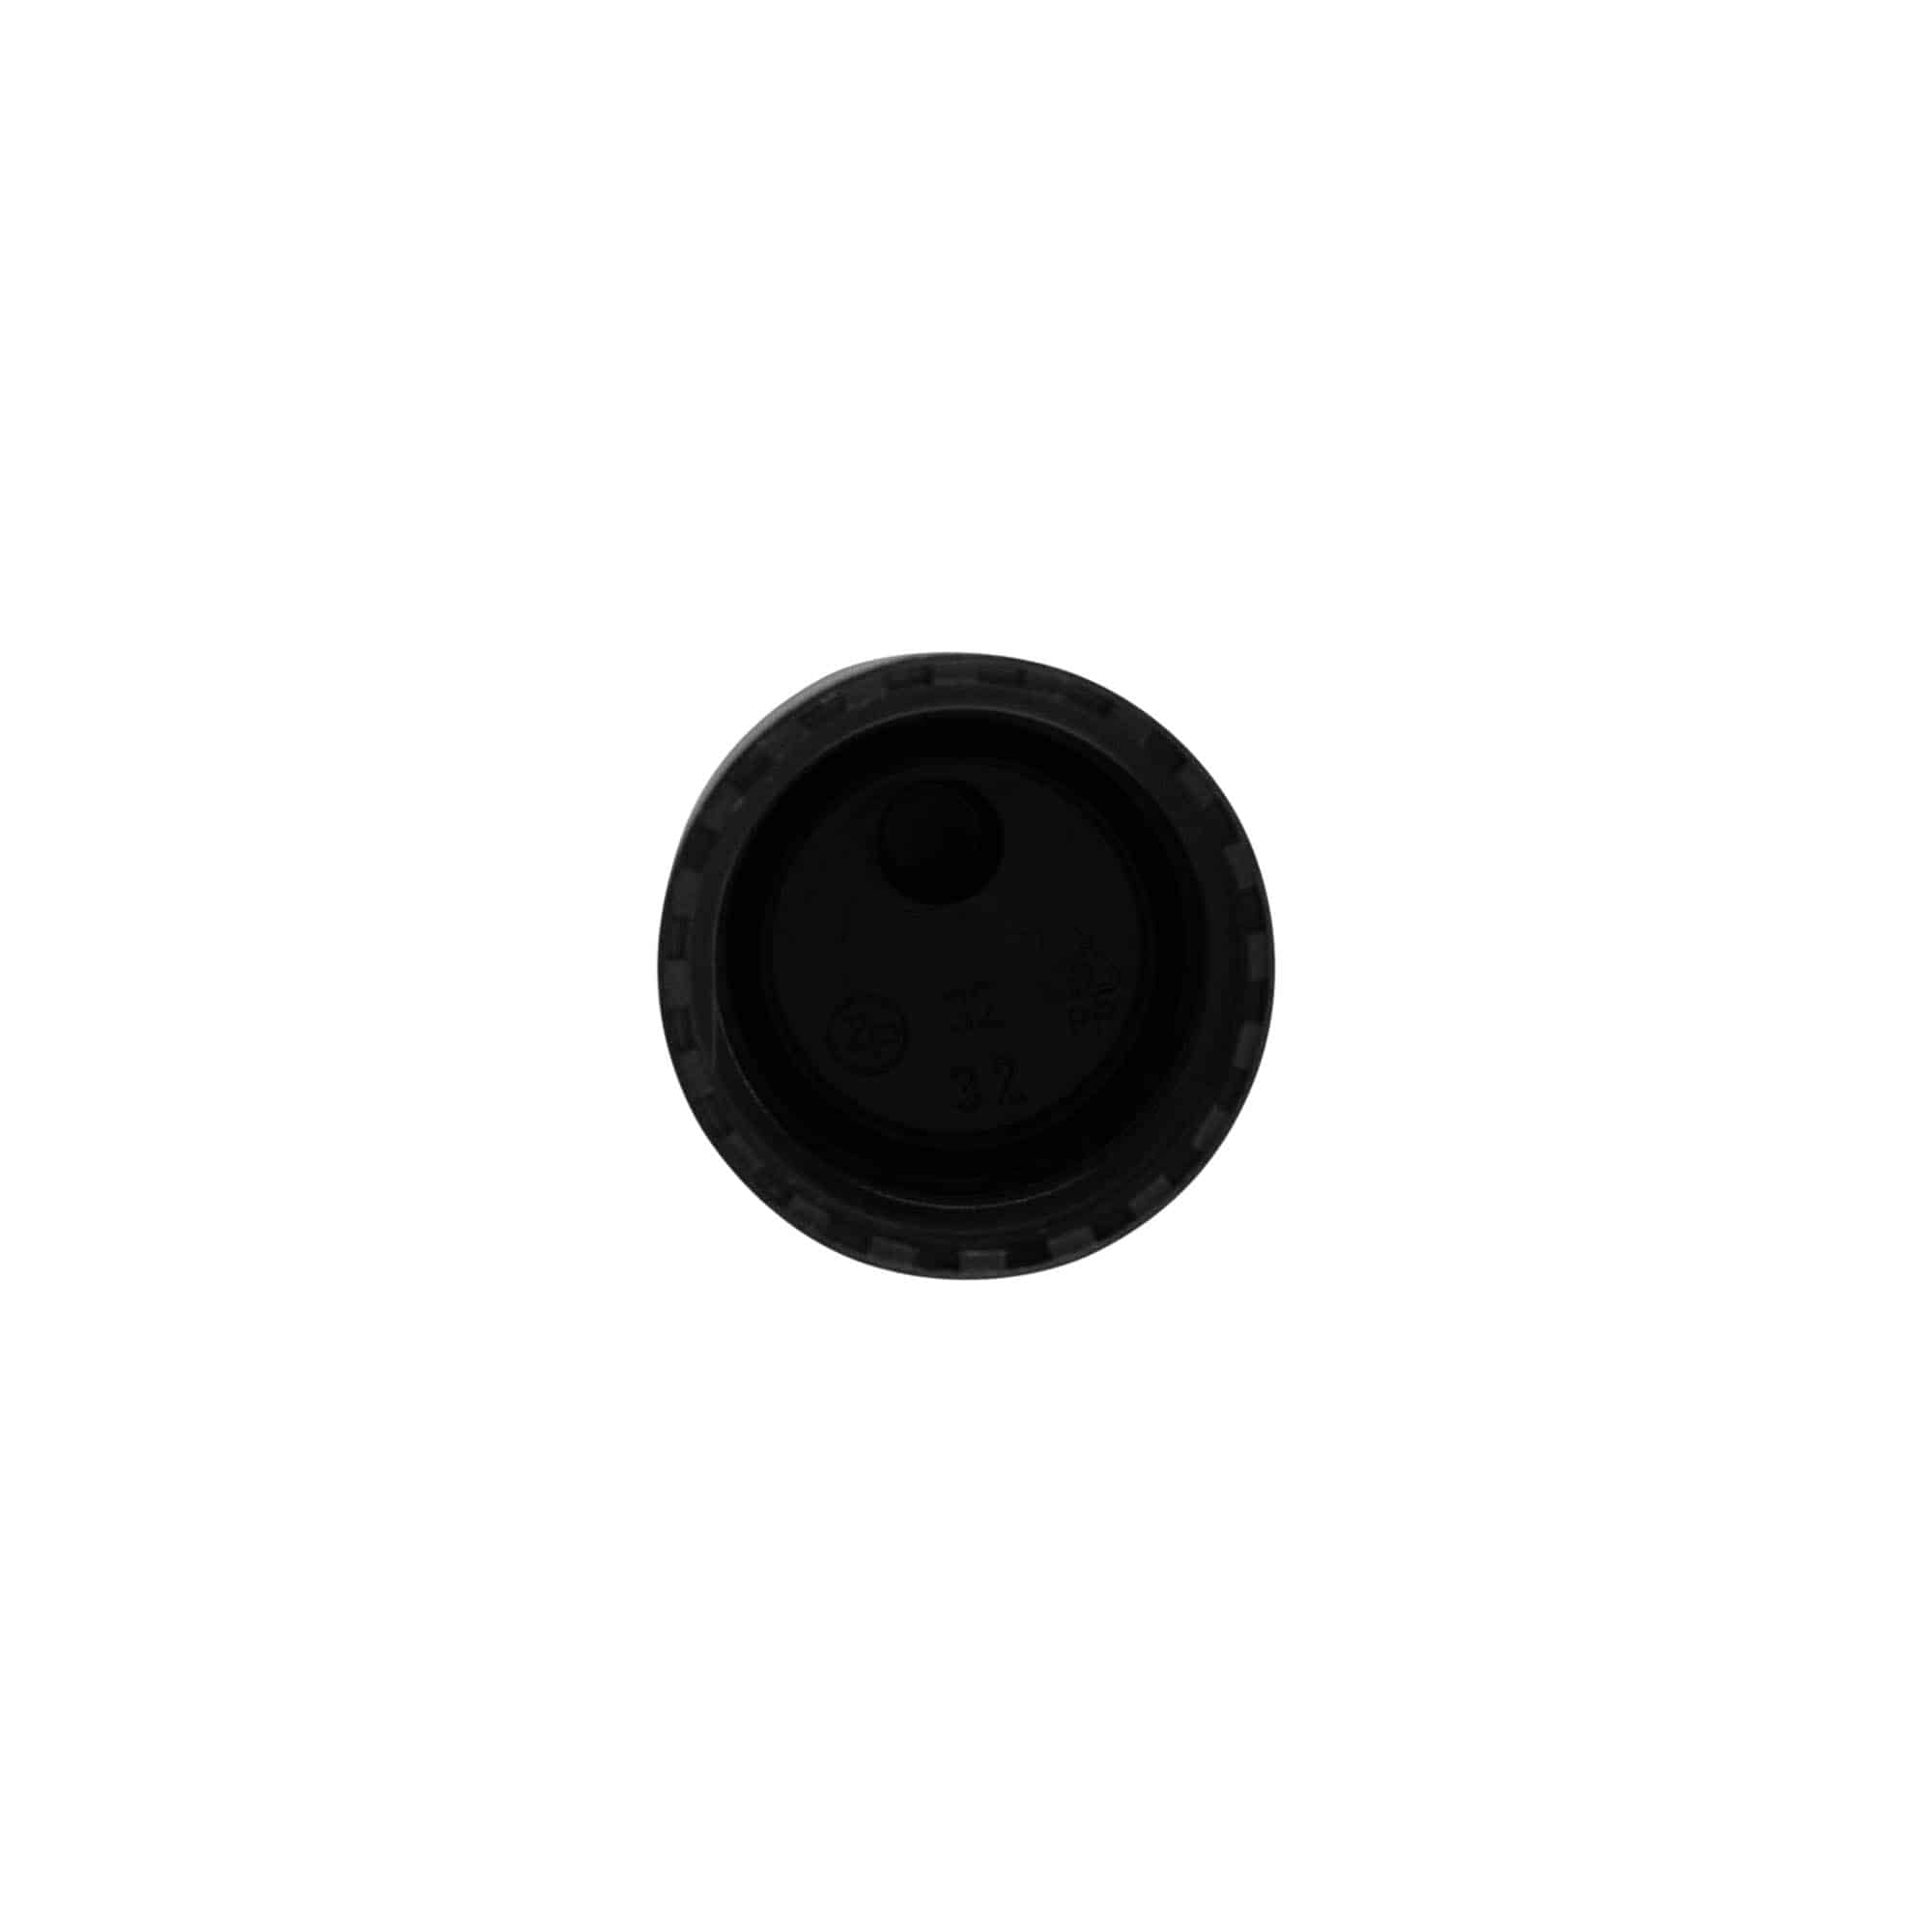 Zakrętka Disc Top, tworzywo sztuczne PP, kolor czarny, do zamknięcia: GPI 24/410